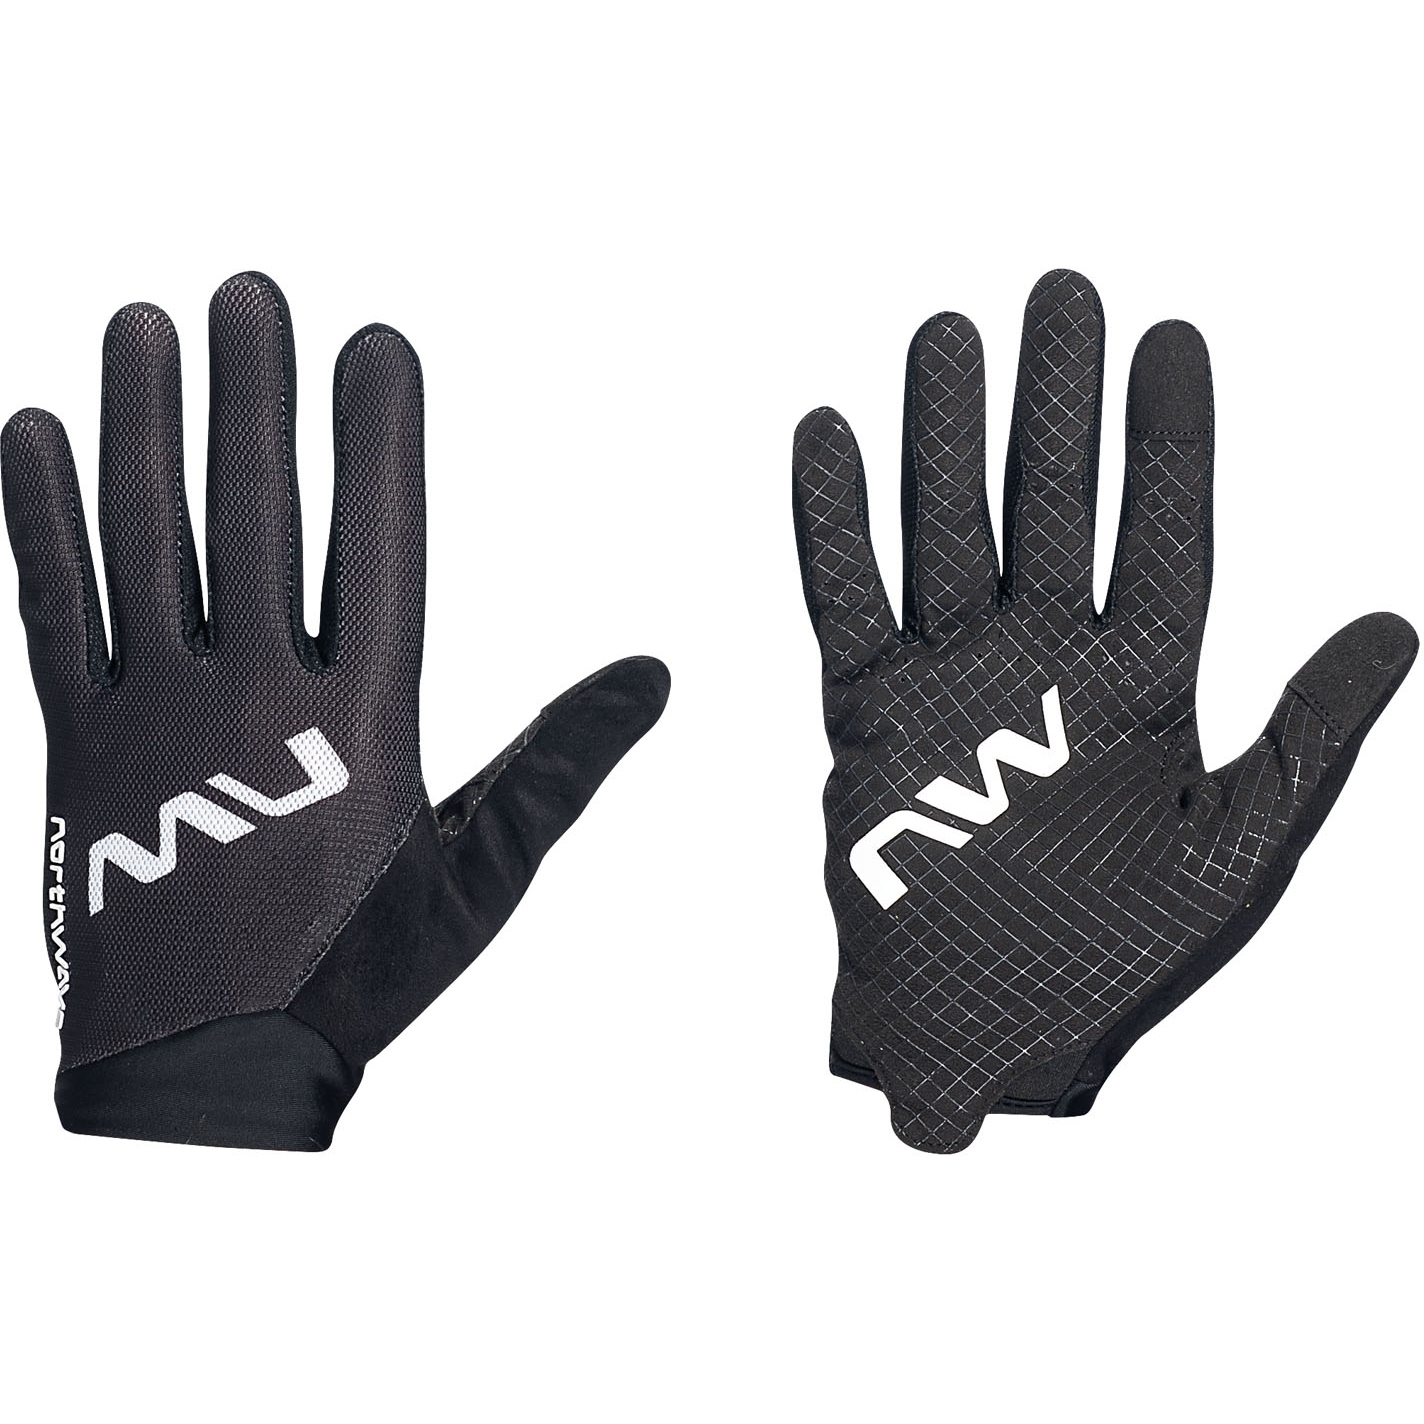 Produktbild von Northwave Extreme Air Handschuhe Herren - schwarz 10